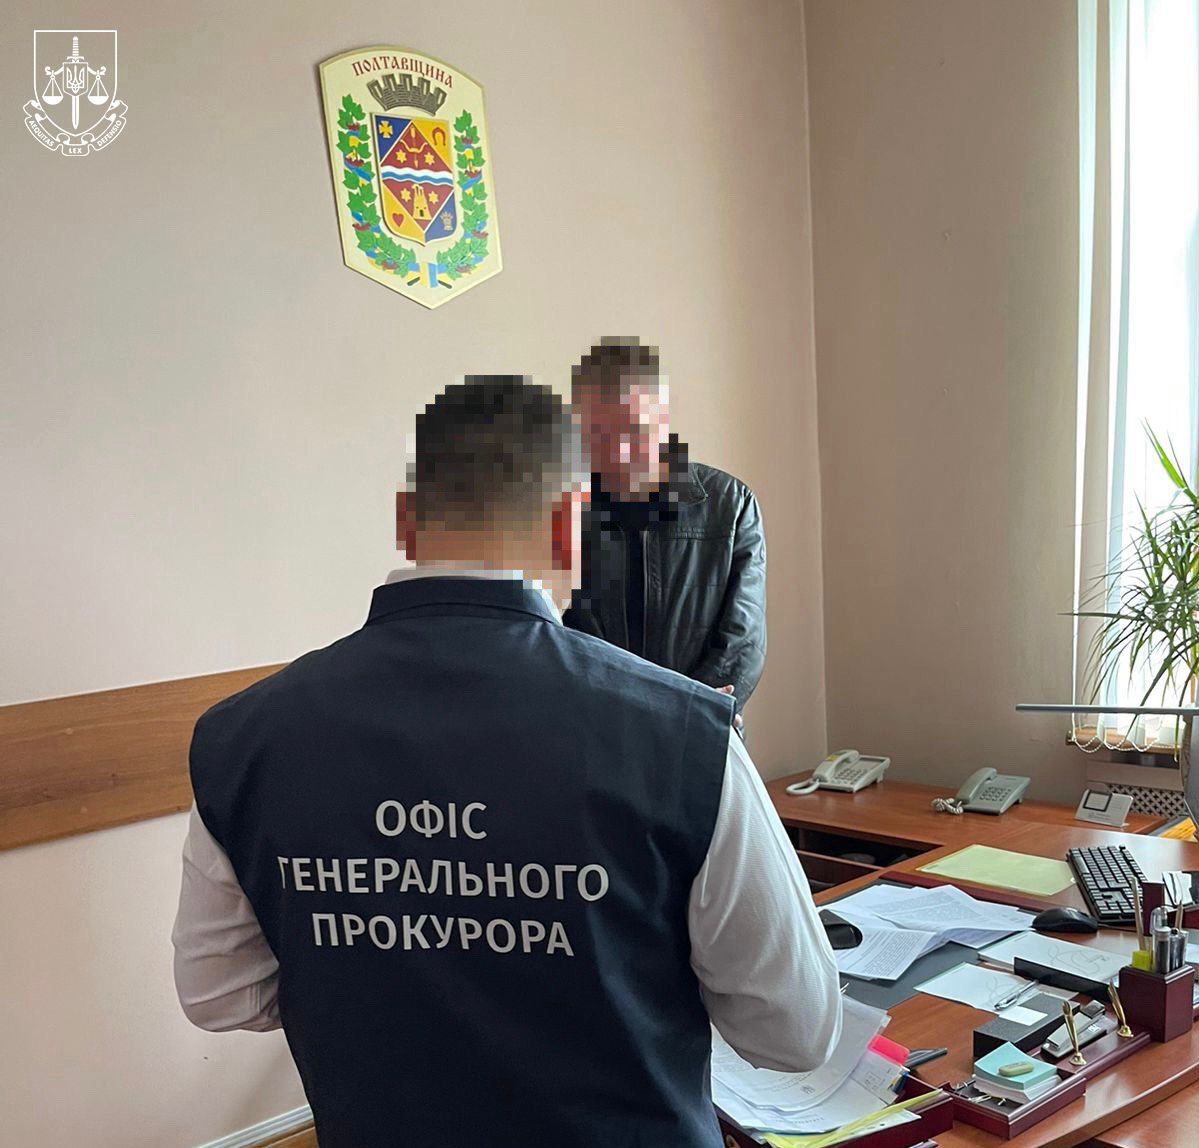 Закордонне відрядження в особистих цілях – заступнику голови Полтавської обласної ради повідомлено про підозру